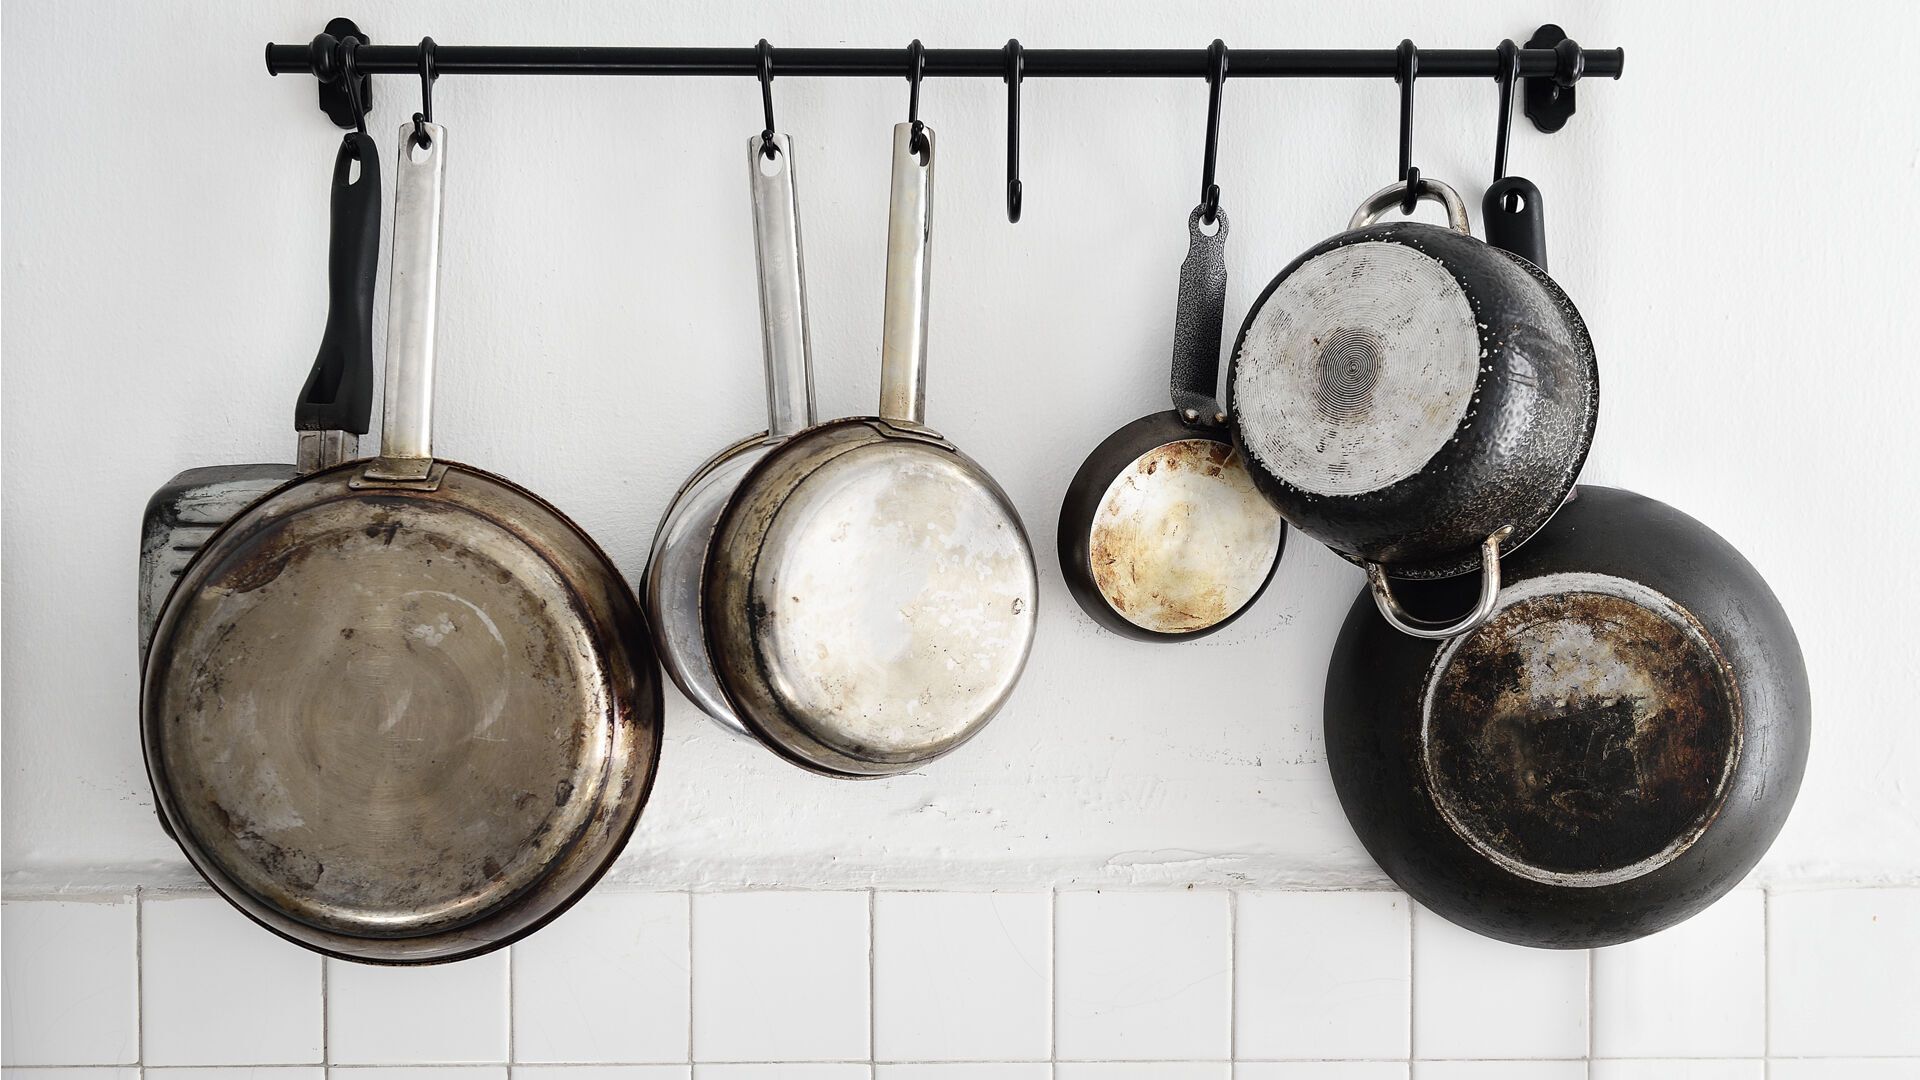 Не псуйте антипригарне покриття на сковорідці: що потрібно зробити з посудом перед готування страв